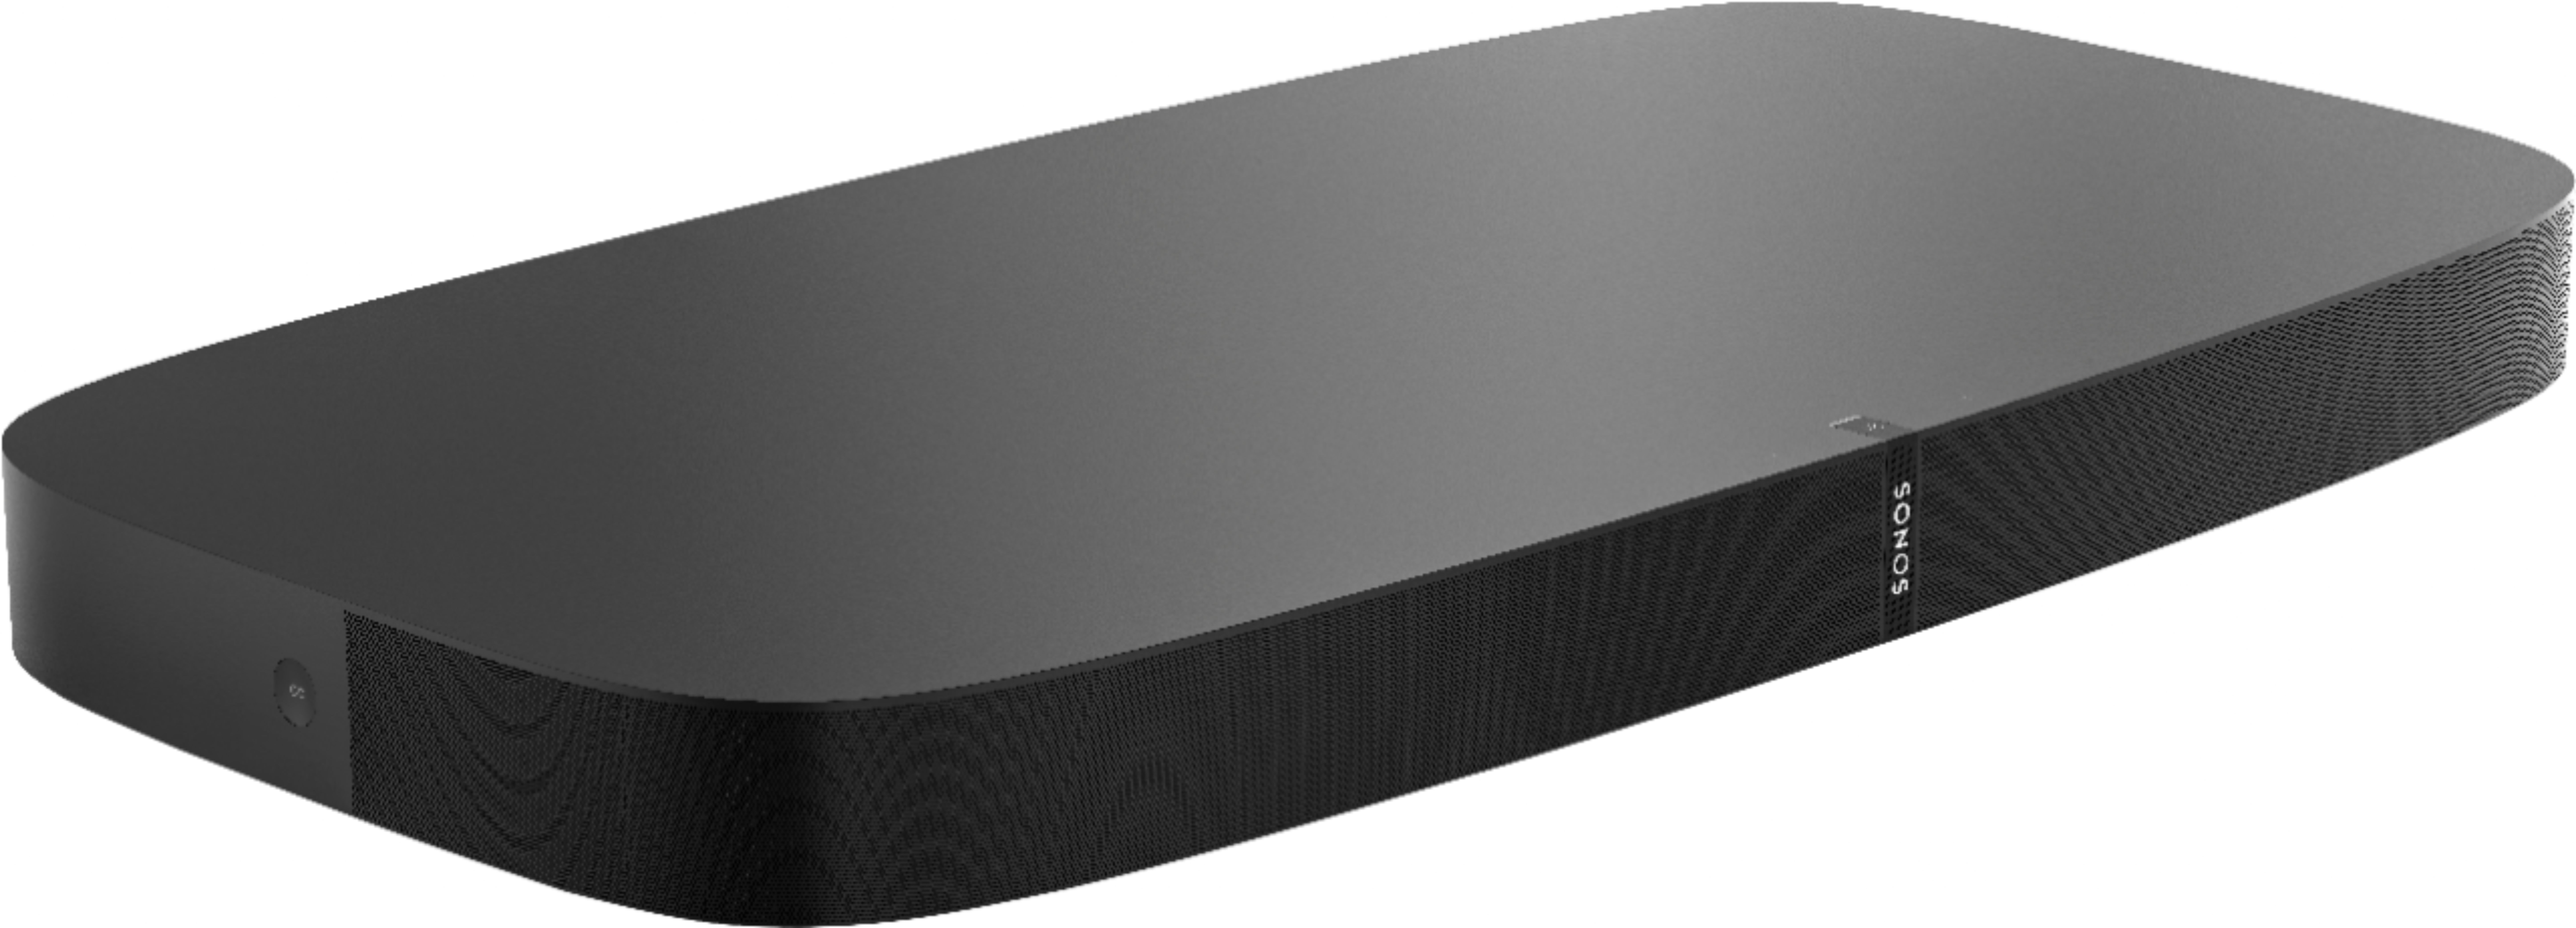 afspejle jeg er glad Hjelm Sonos Playbase Wireless Soundbase for Home Theater and Streaming Music  Black PBASEUS1BLK - Best Buy